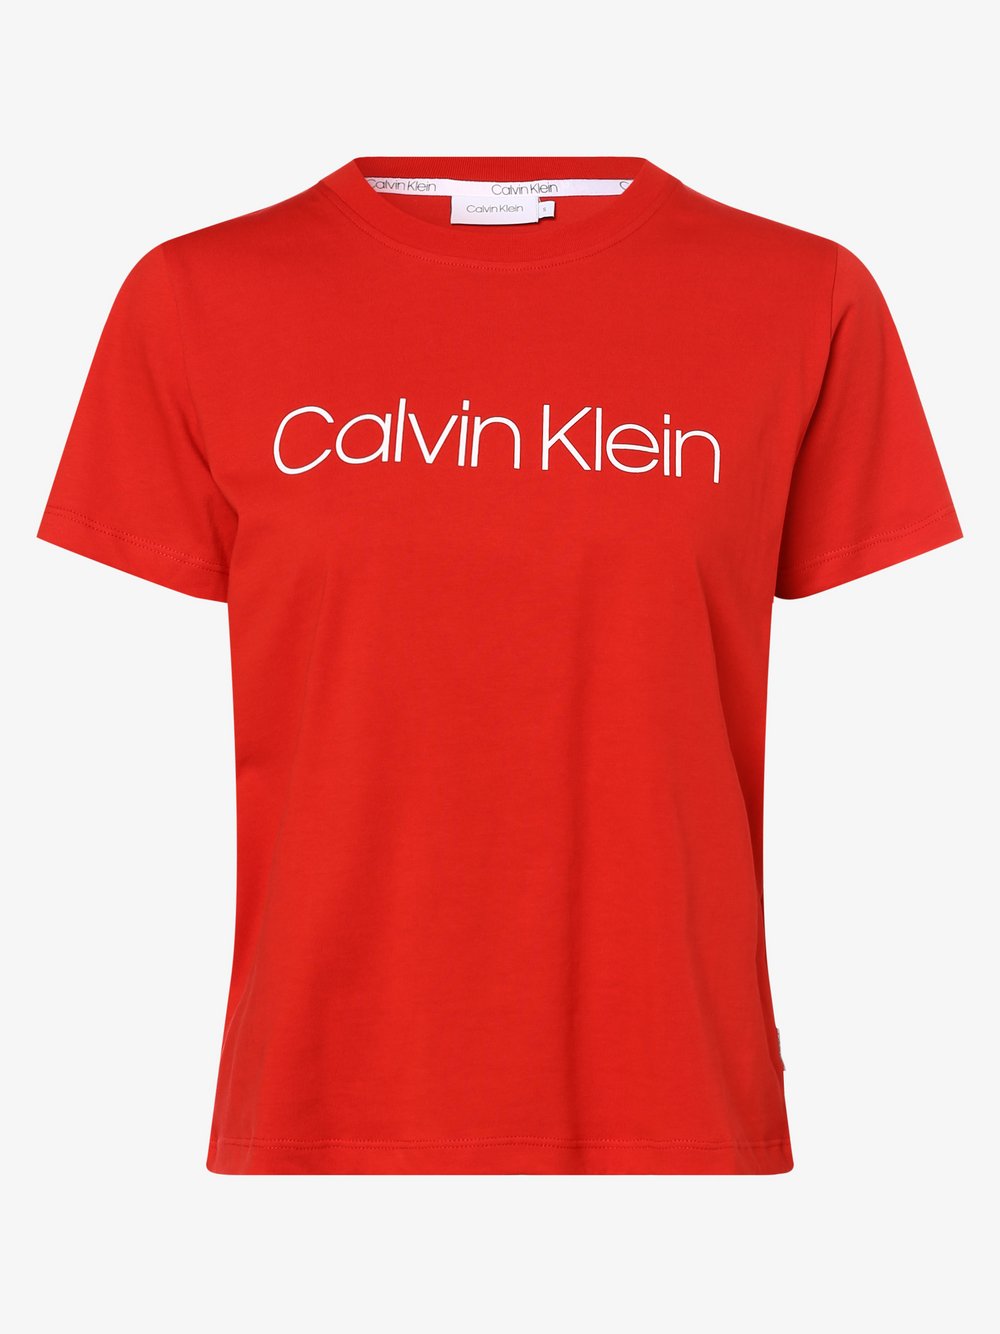 Calvin Klein - T-shirt damski, czerwony